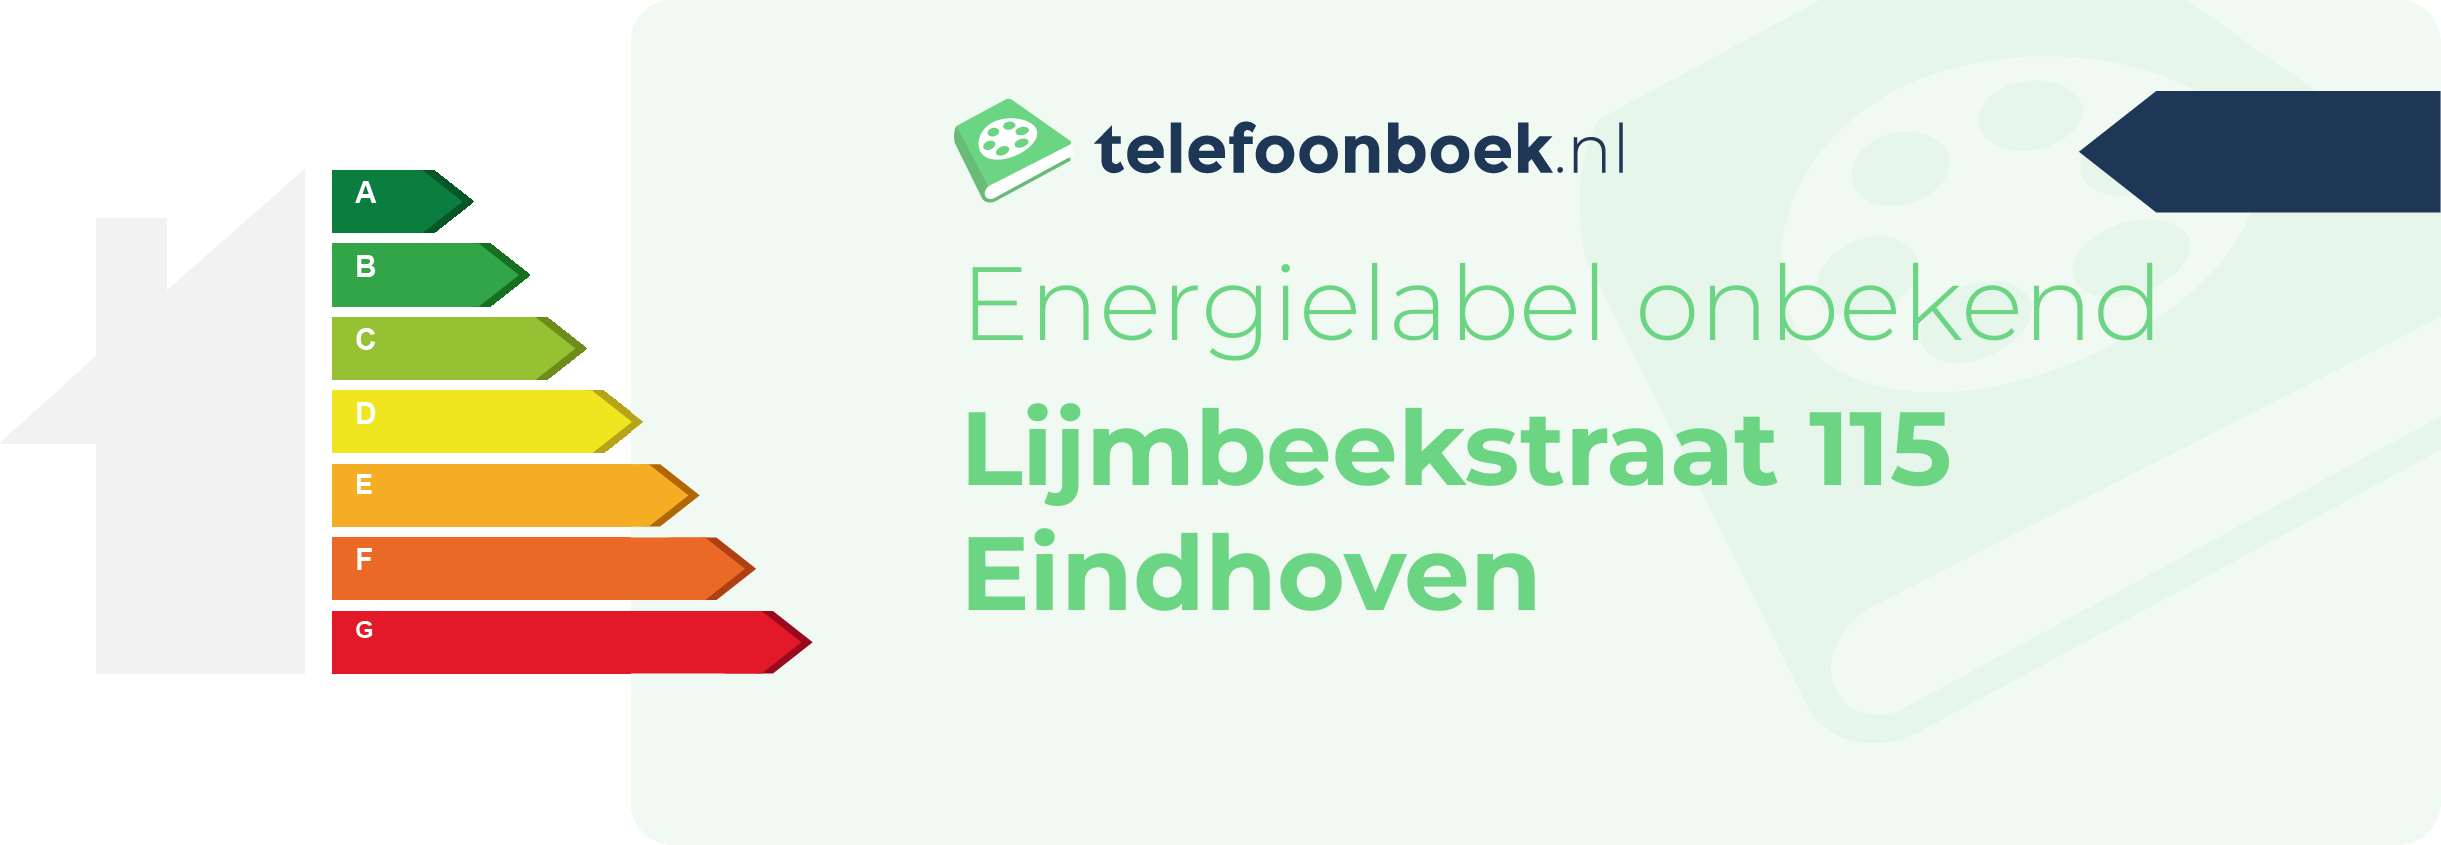 Energielabel Lijmbeekstraat 115 Eindhoven